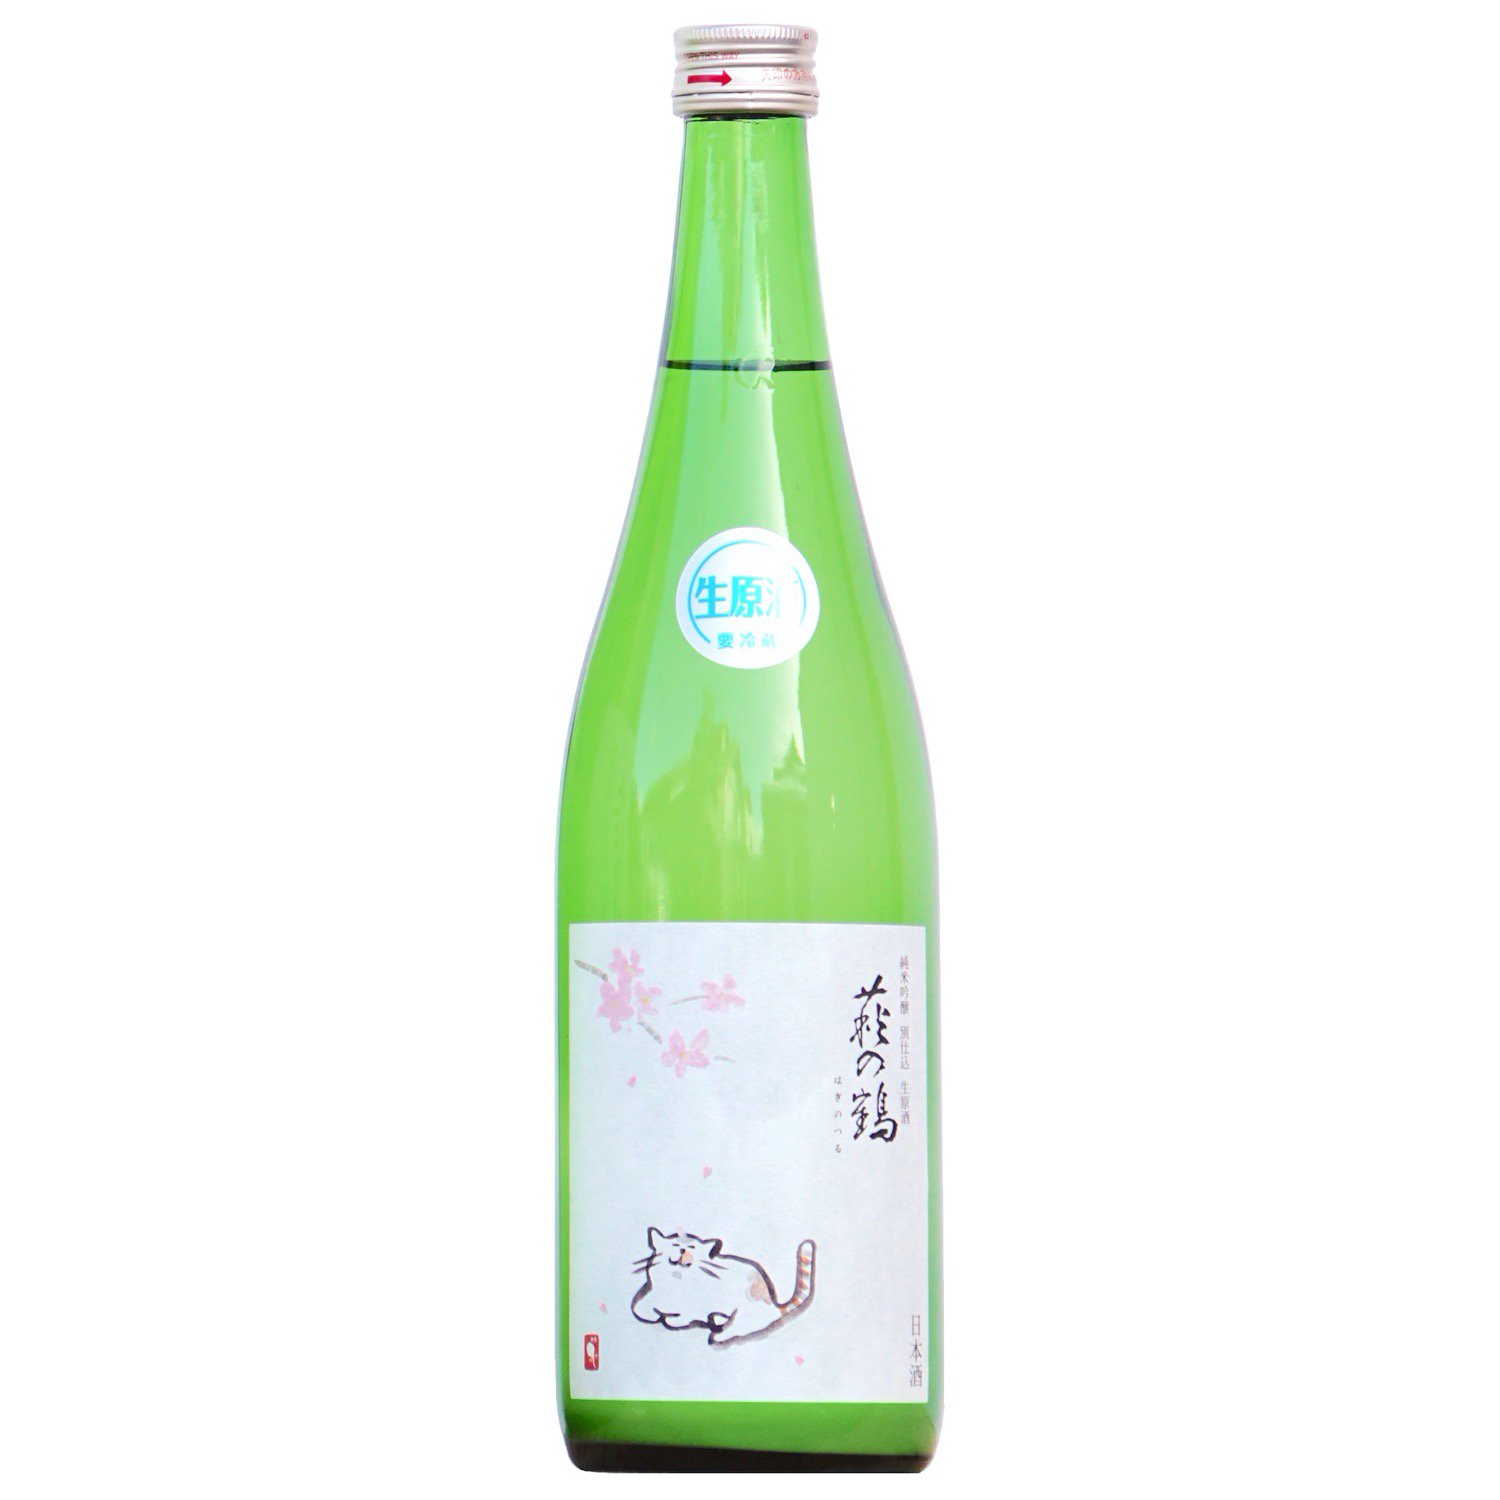 萩の鶴 純米吟醸 さくら猫ラベル 生原酒 720ml